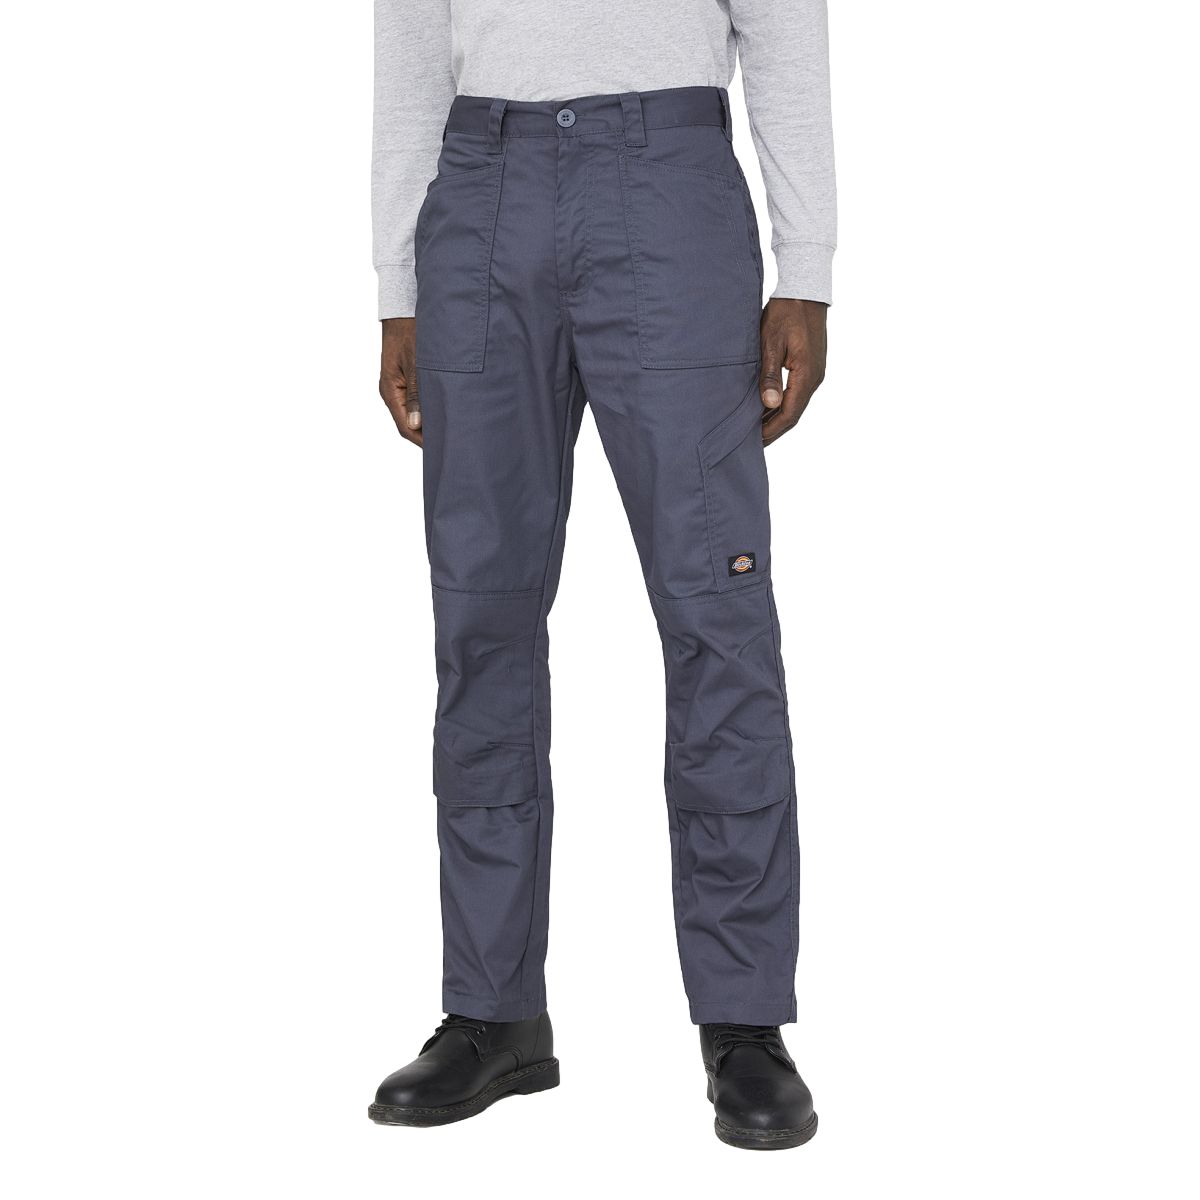 Pantalon de travail Action Flex gris - Dickies - Taille 52 0